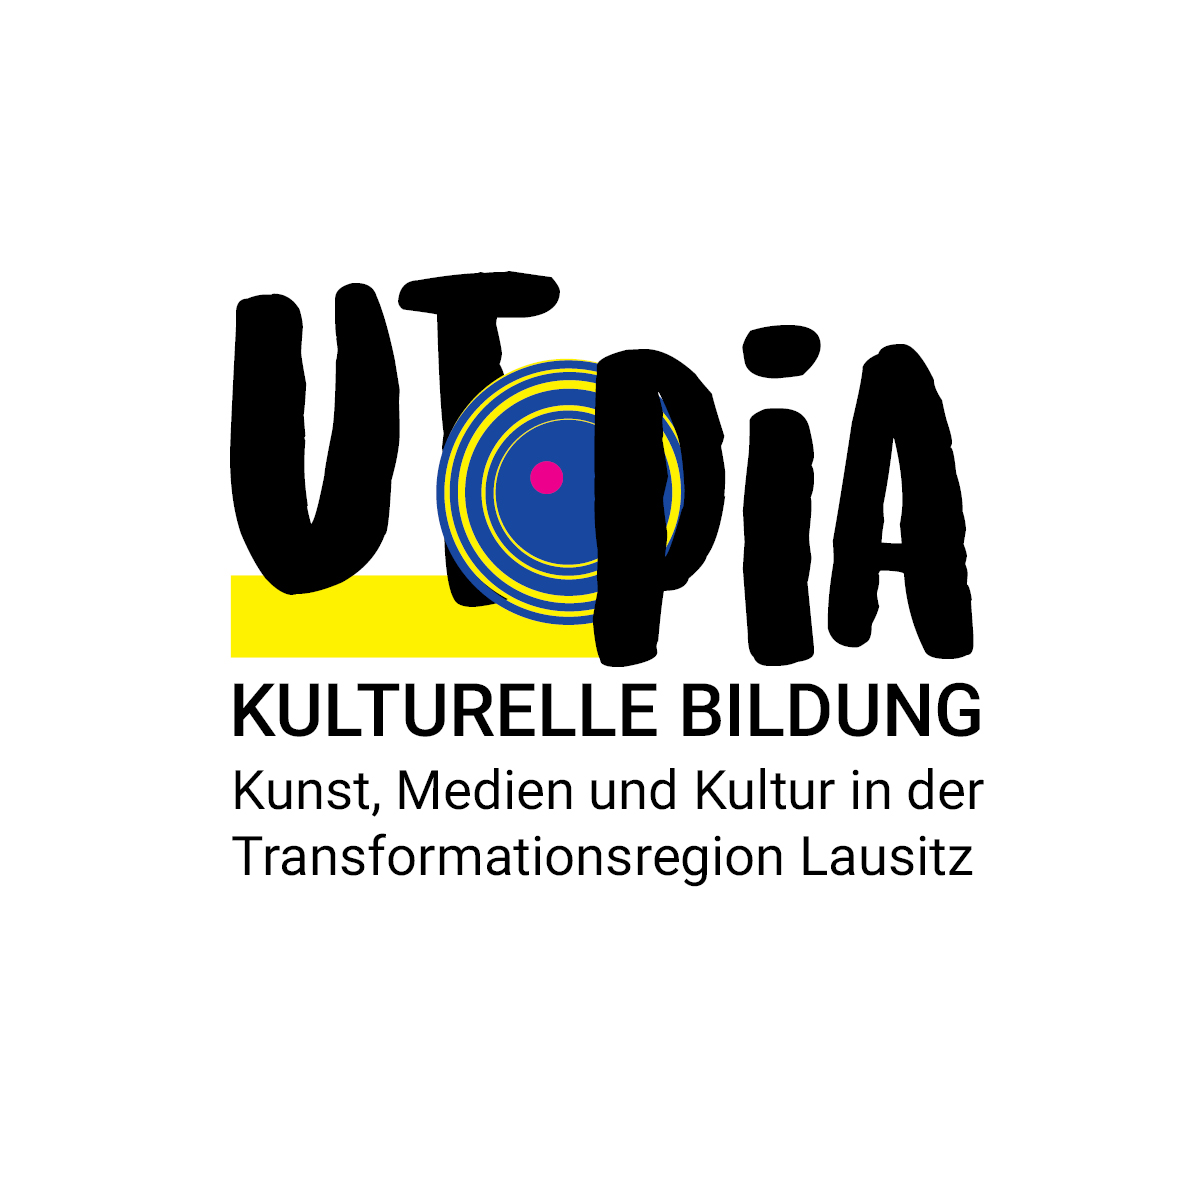 Auf dem Bild steht der Schriftzug "UTOPIA" mit einem blauen Kreis zwischen "T" und "P" und Kulturelle Bildung